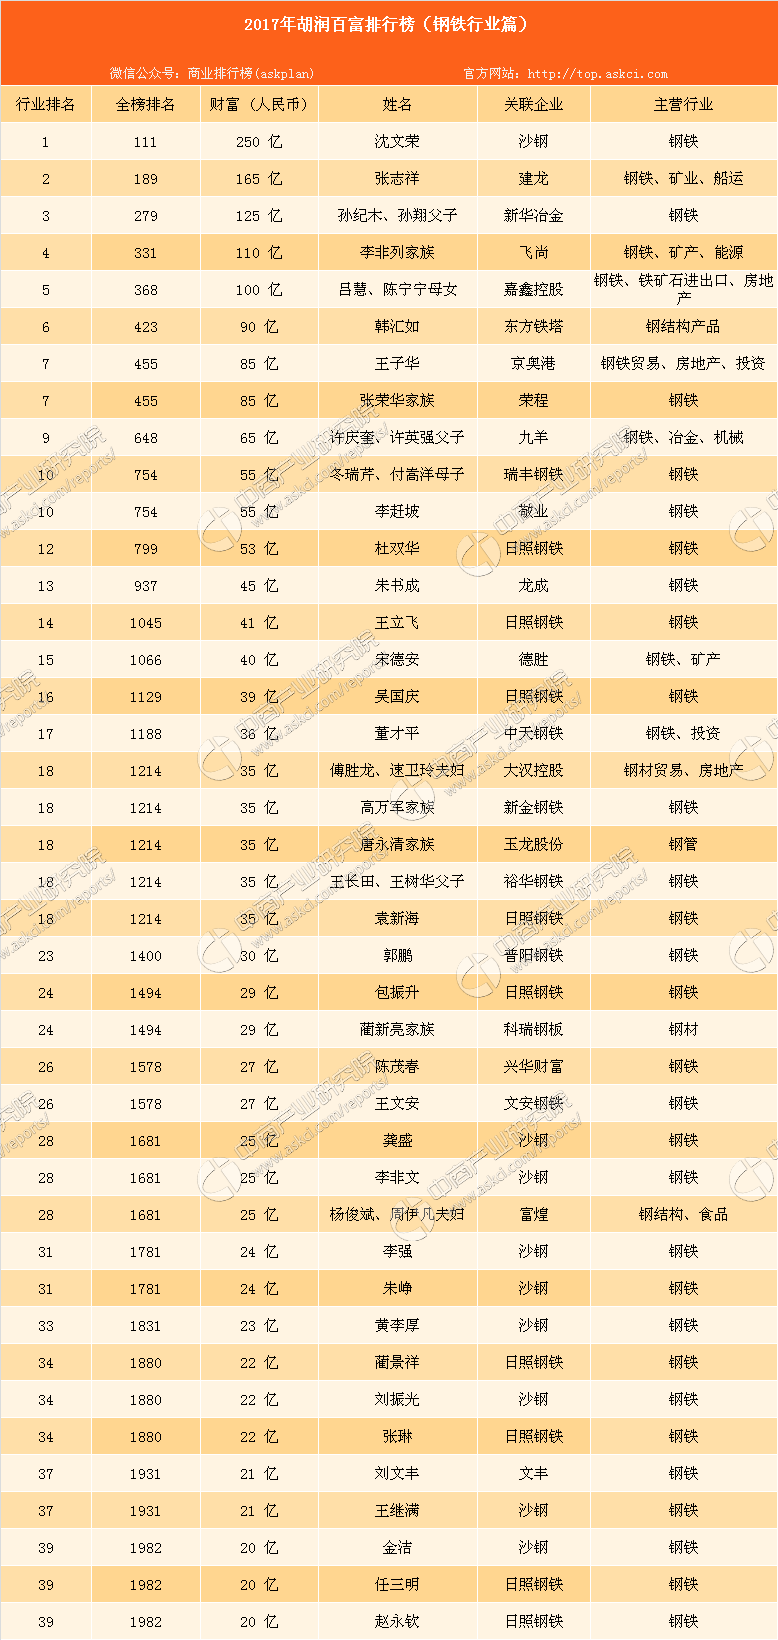 2017年胡润中国钢铁行业百富排行榜:共41位富